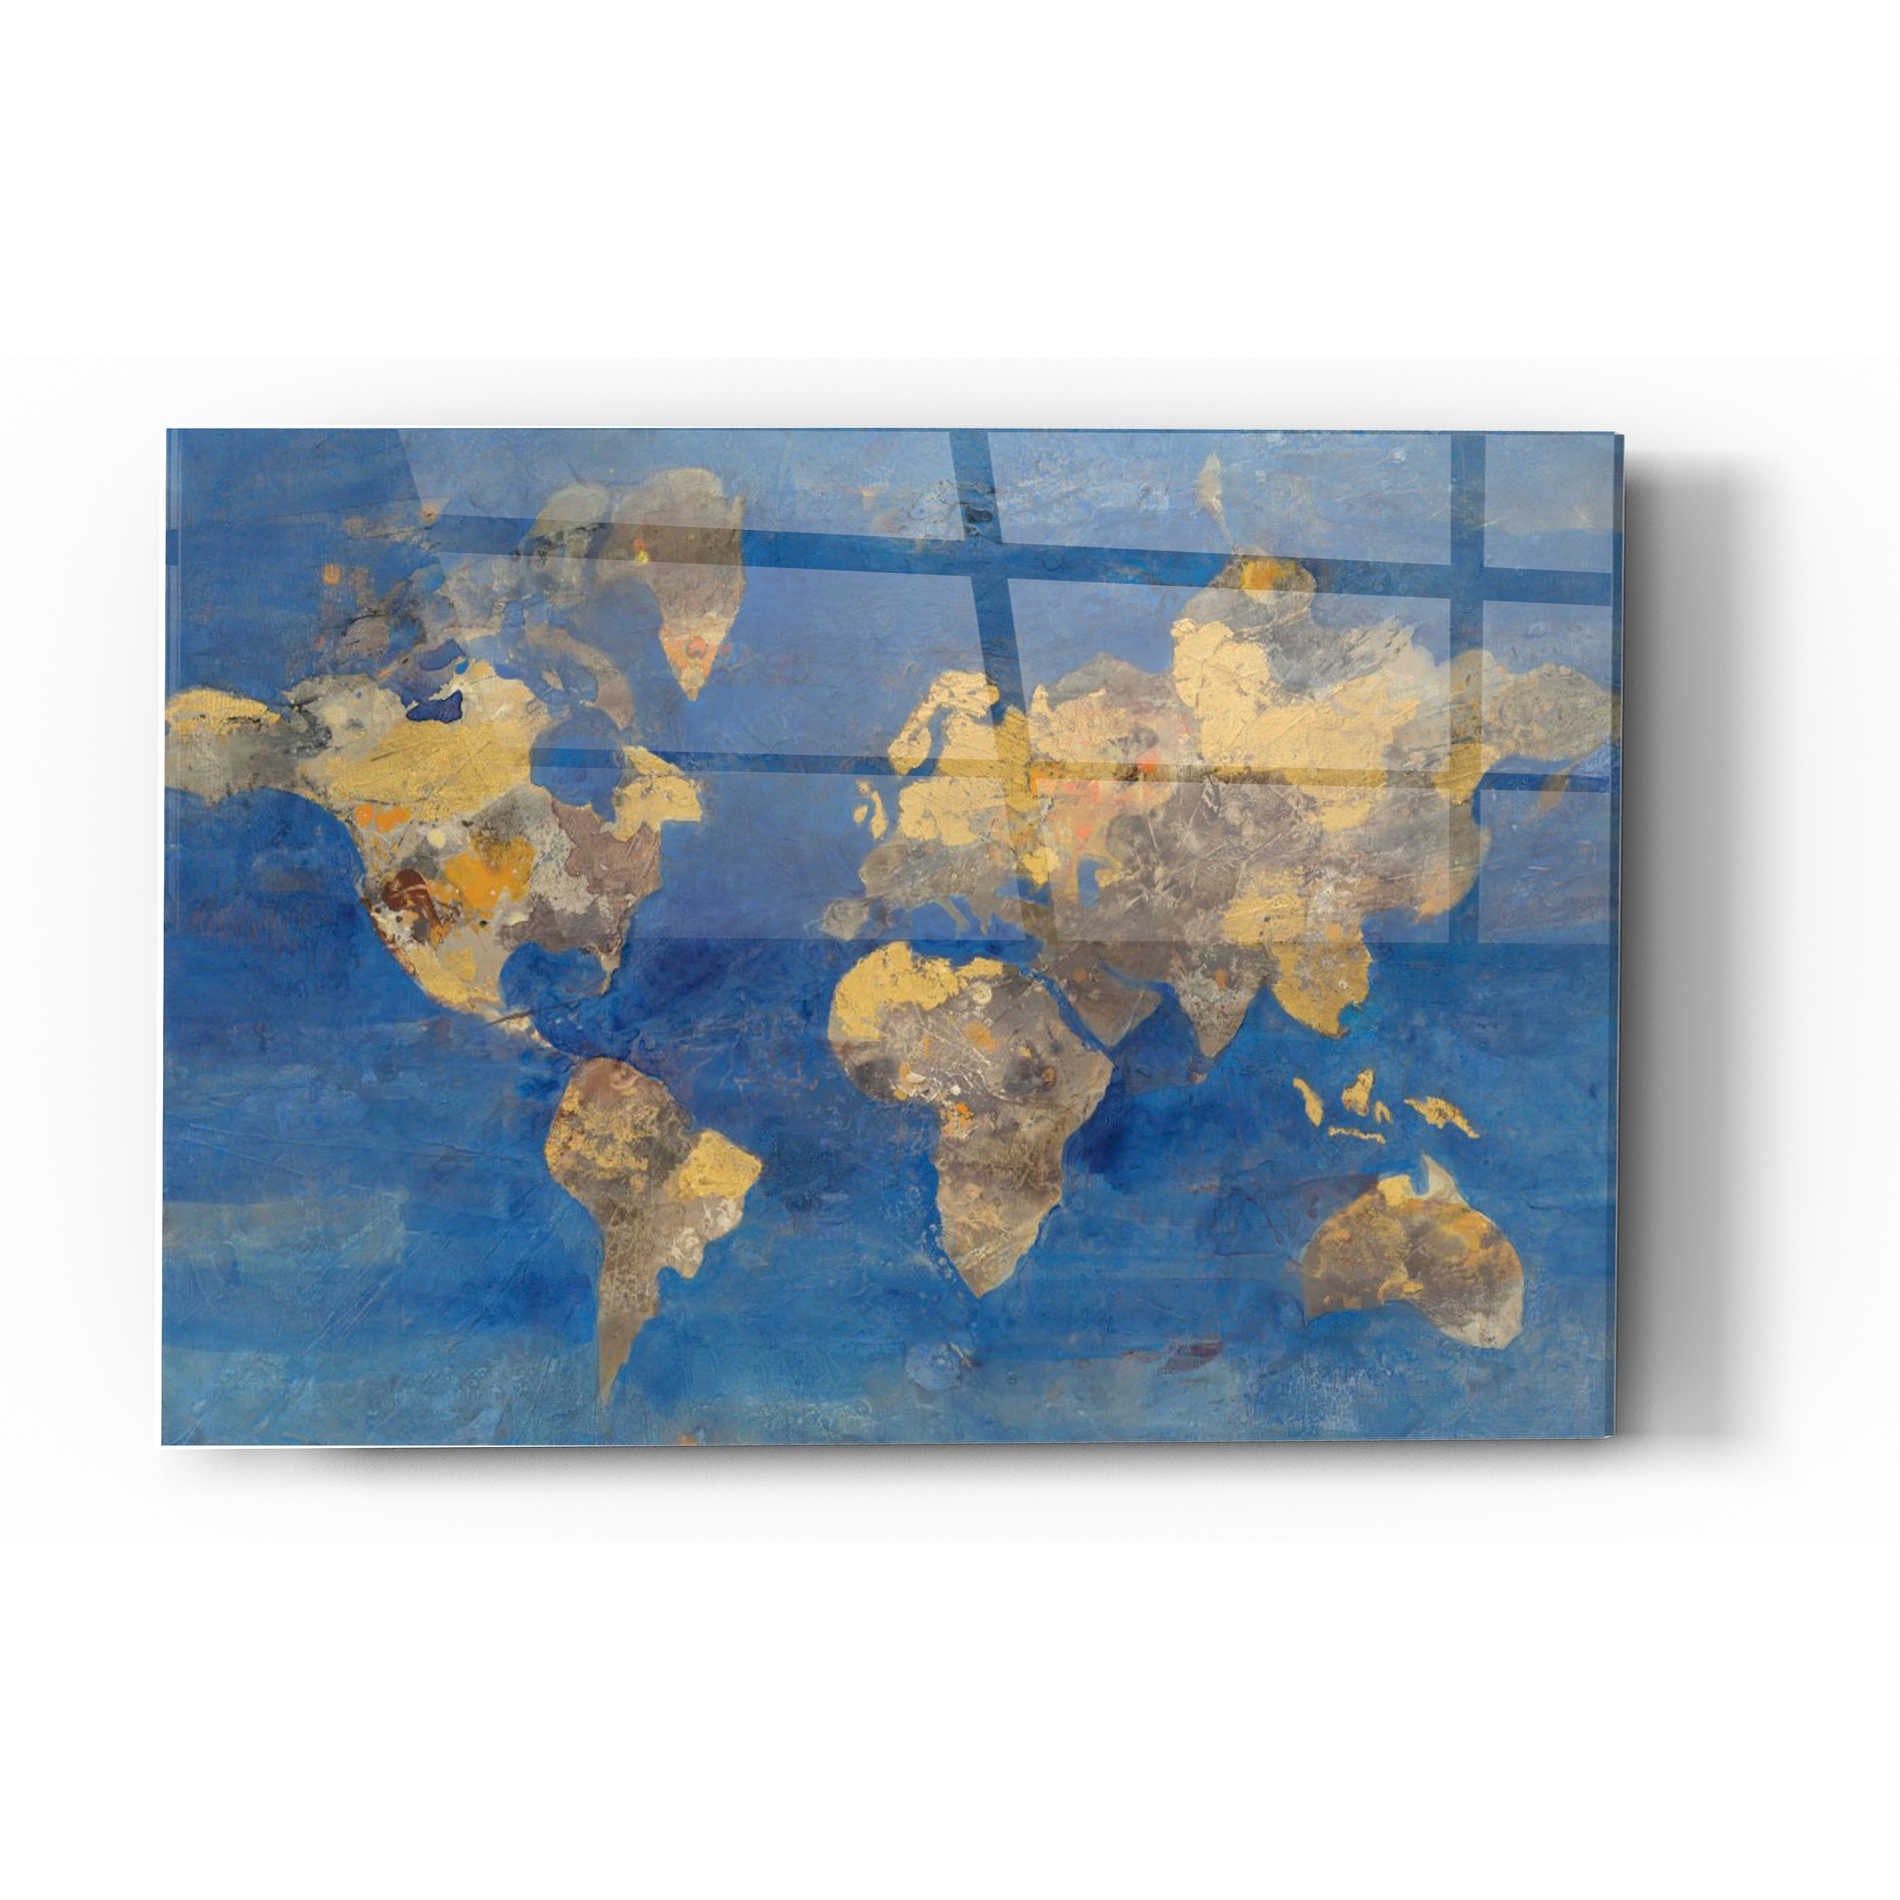 Epic Art 'Blue World' by Albena Hristova, Acrylic Glass Wall Art,24x36